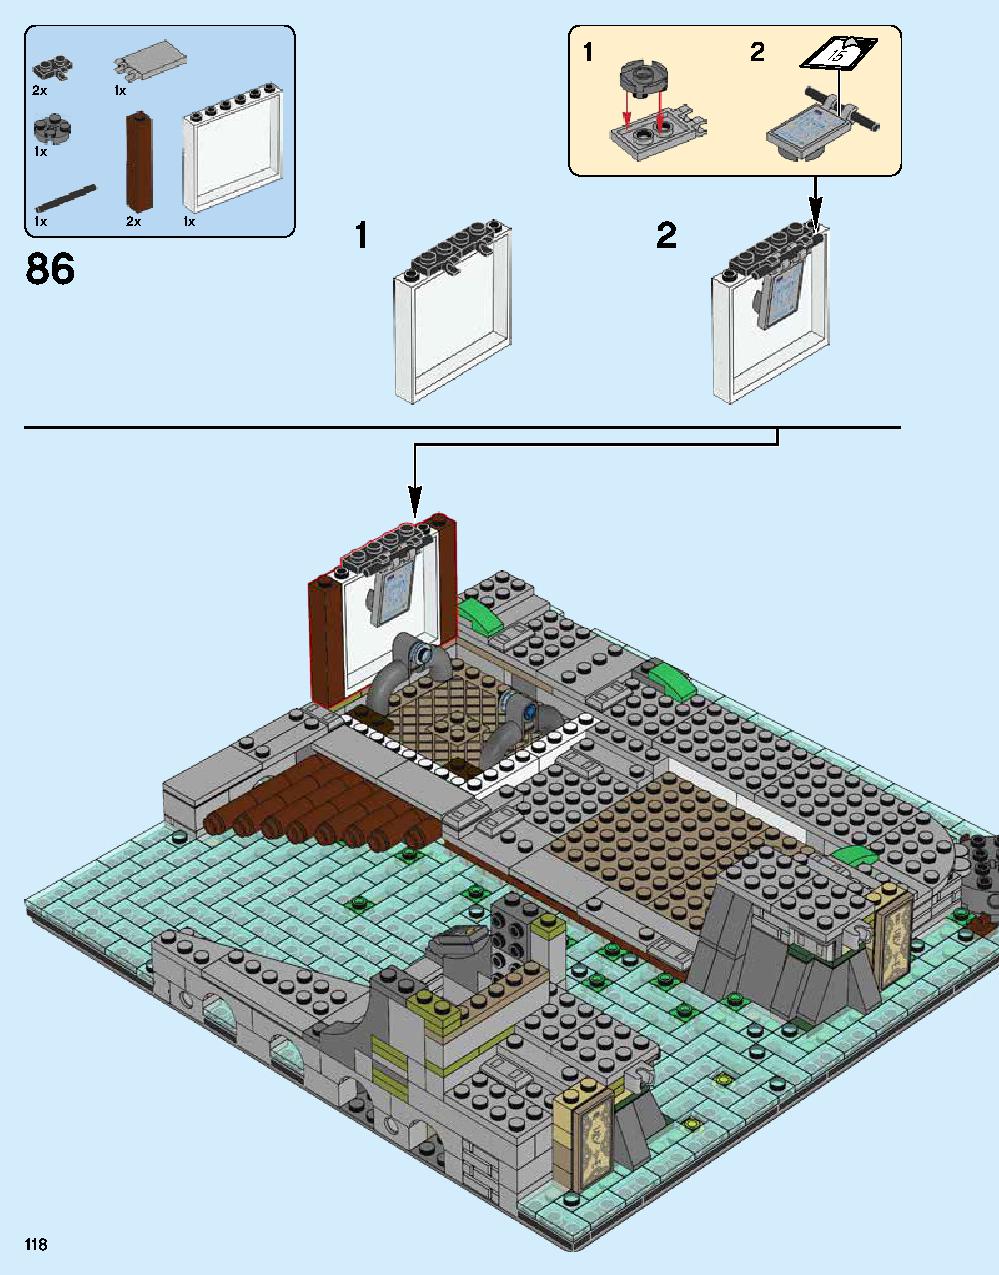 닌자고® 시티 70620 레고 세트 제품정보 레고 조립설명서 118 page